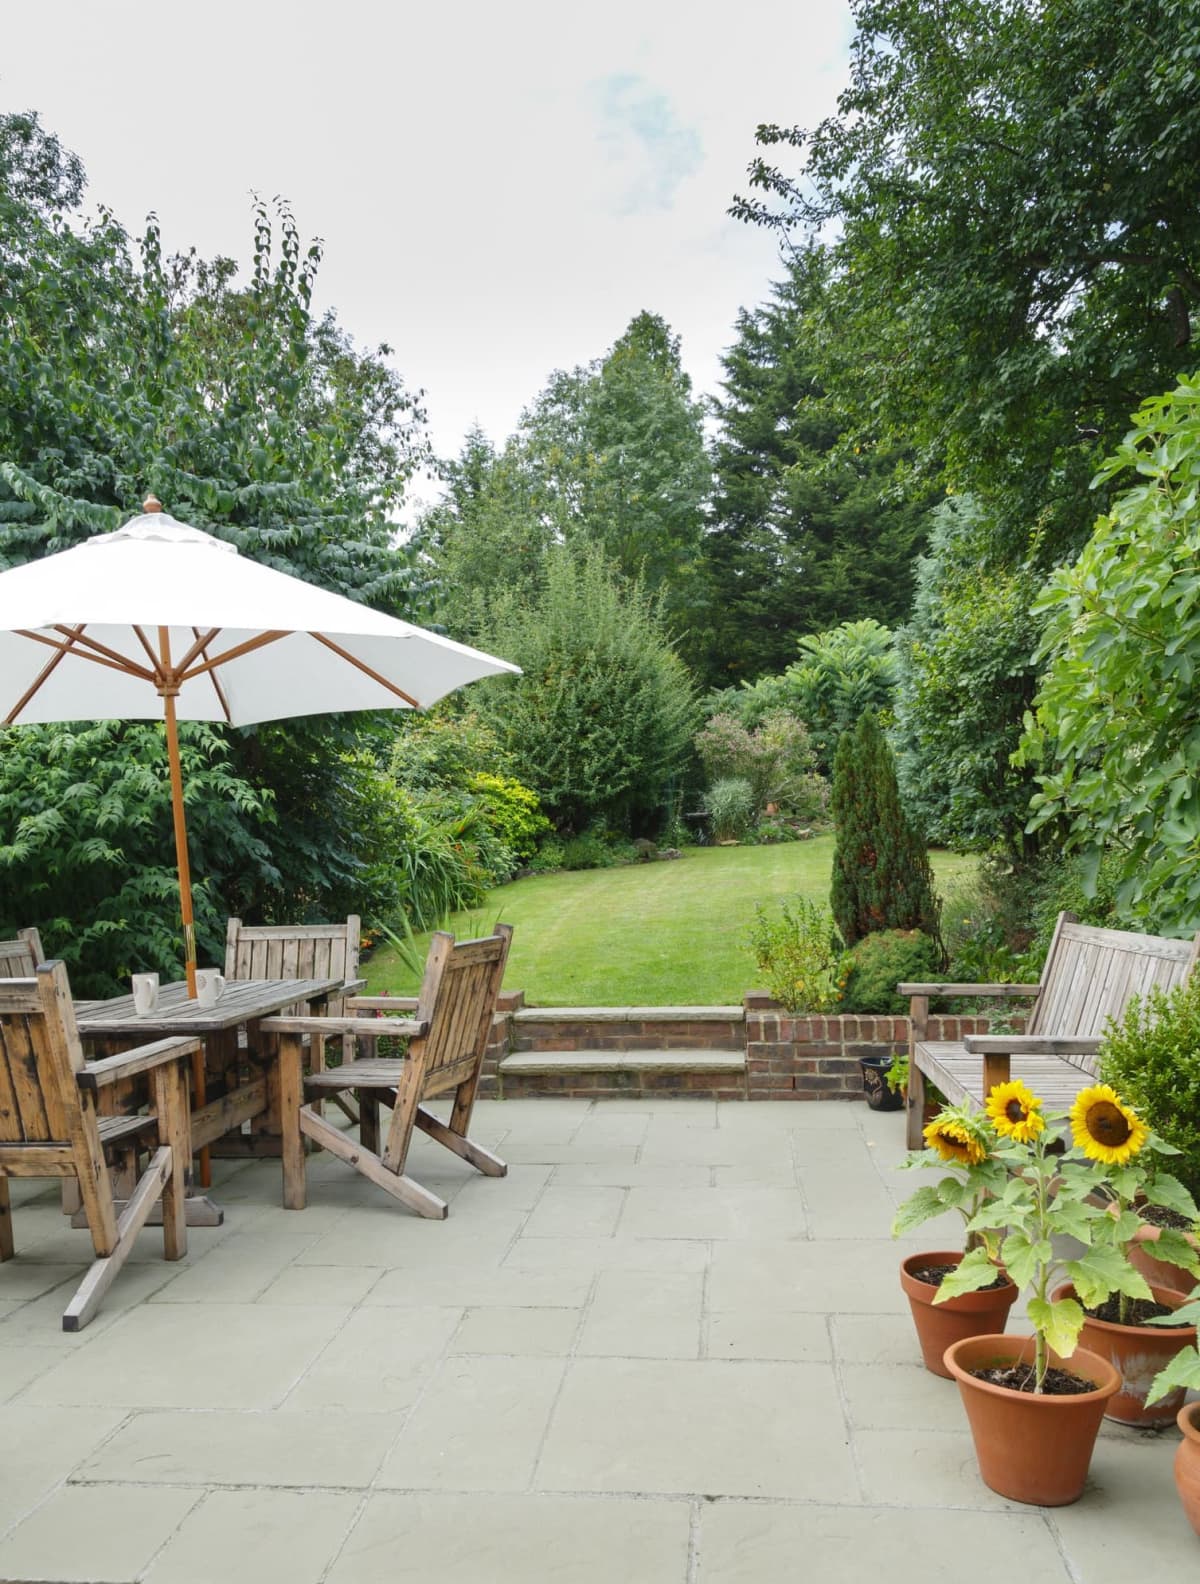 Garden in summer with patio, wooden garden furniture, and a parasol or sun umbrella